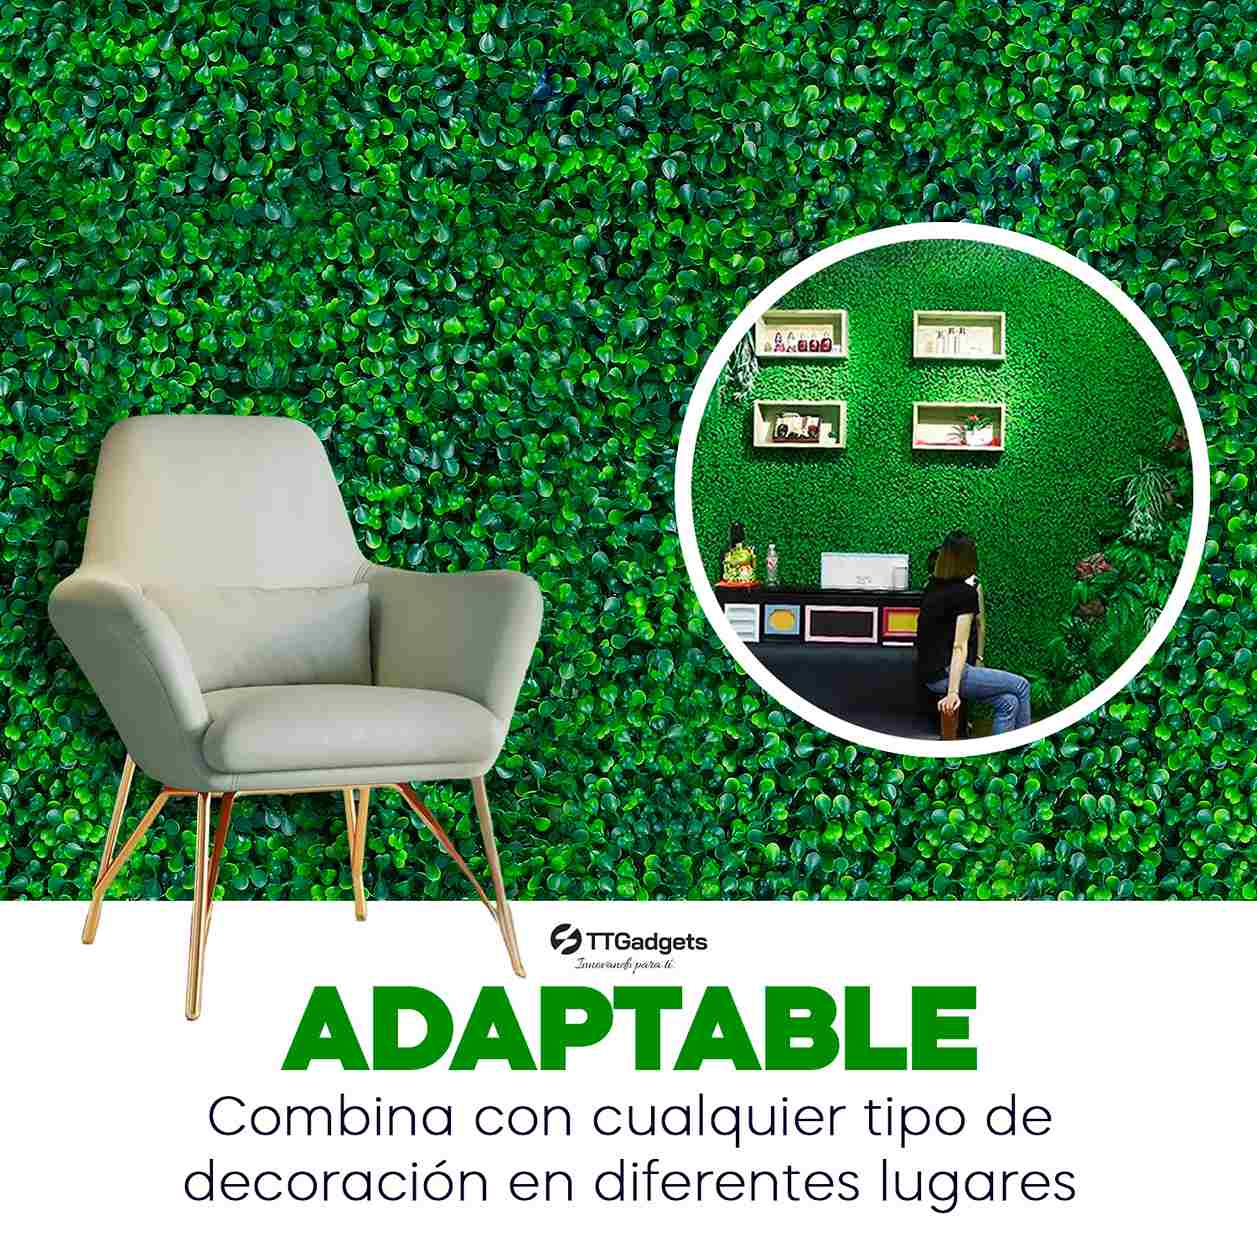 Kit de 10 Piezas de Follaje Artificial Sintético para Muro | Color Verde Natural| Medida por pieza: 60x40 cm